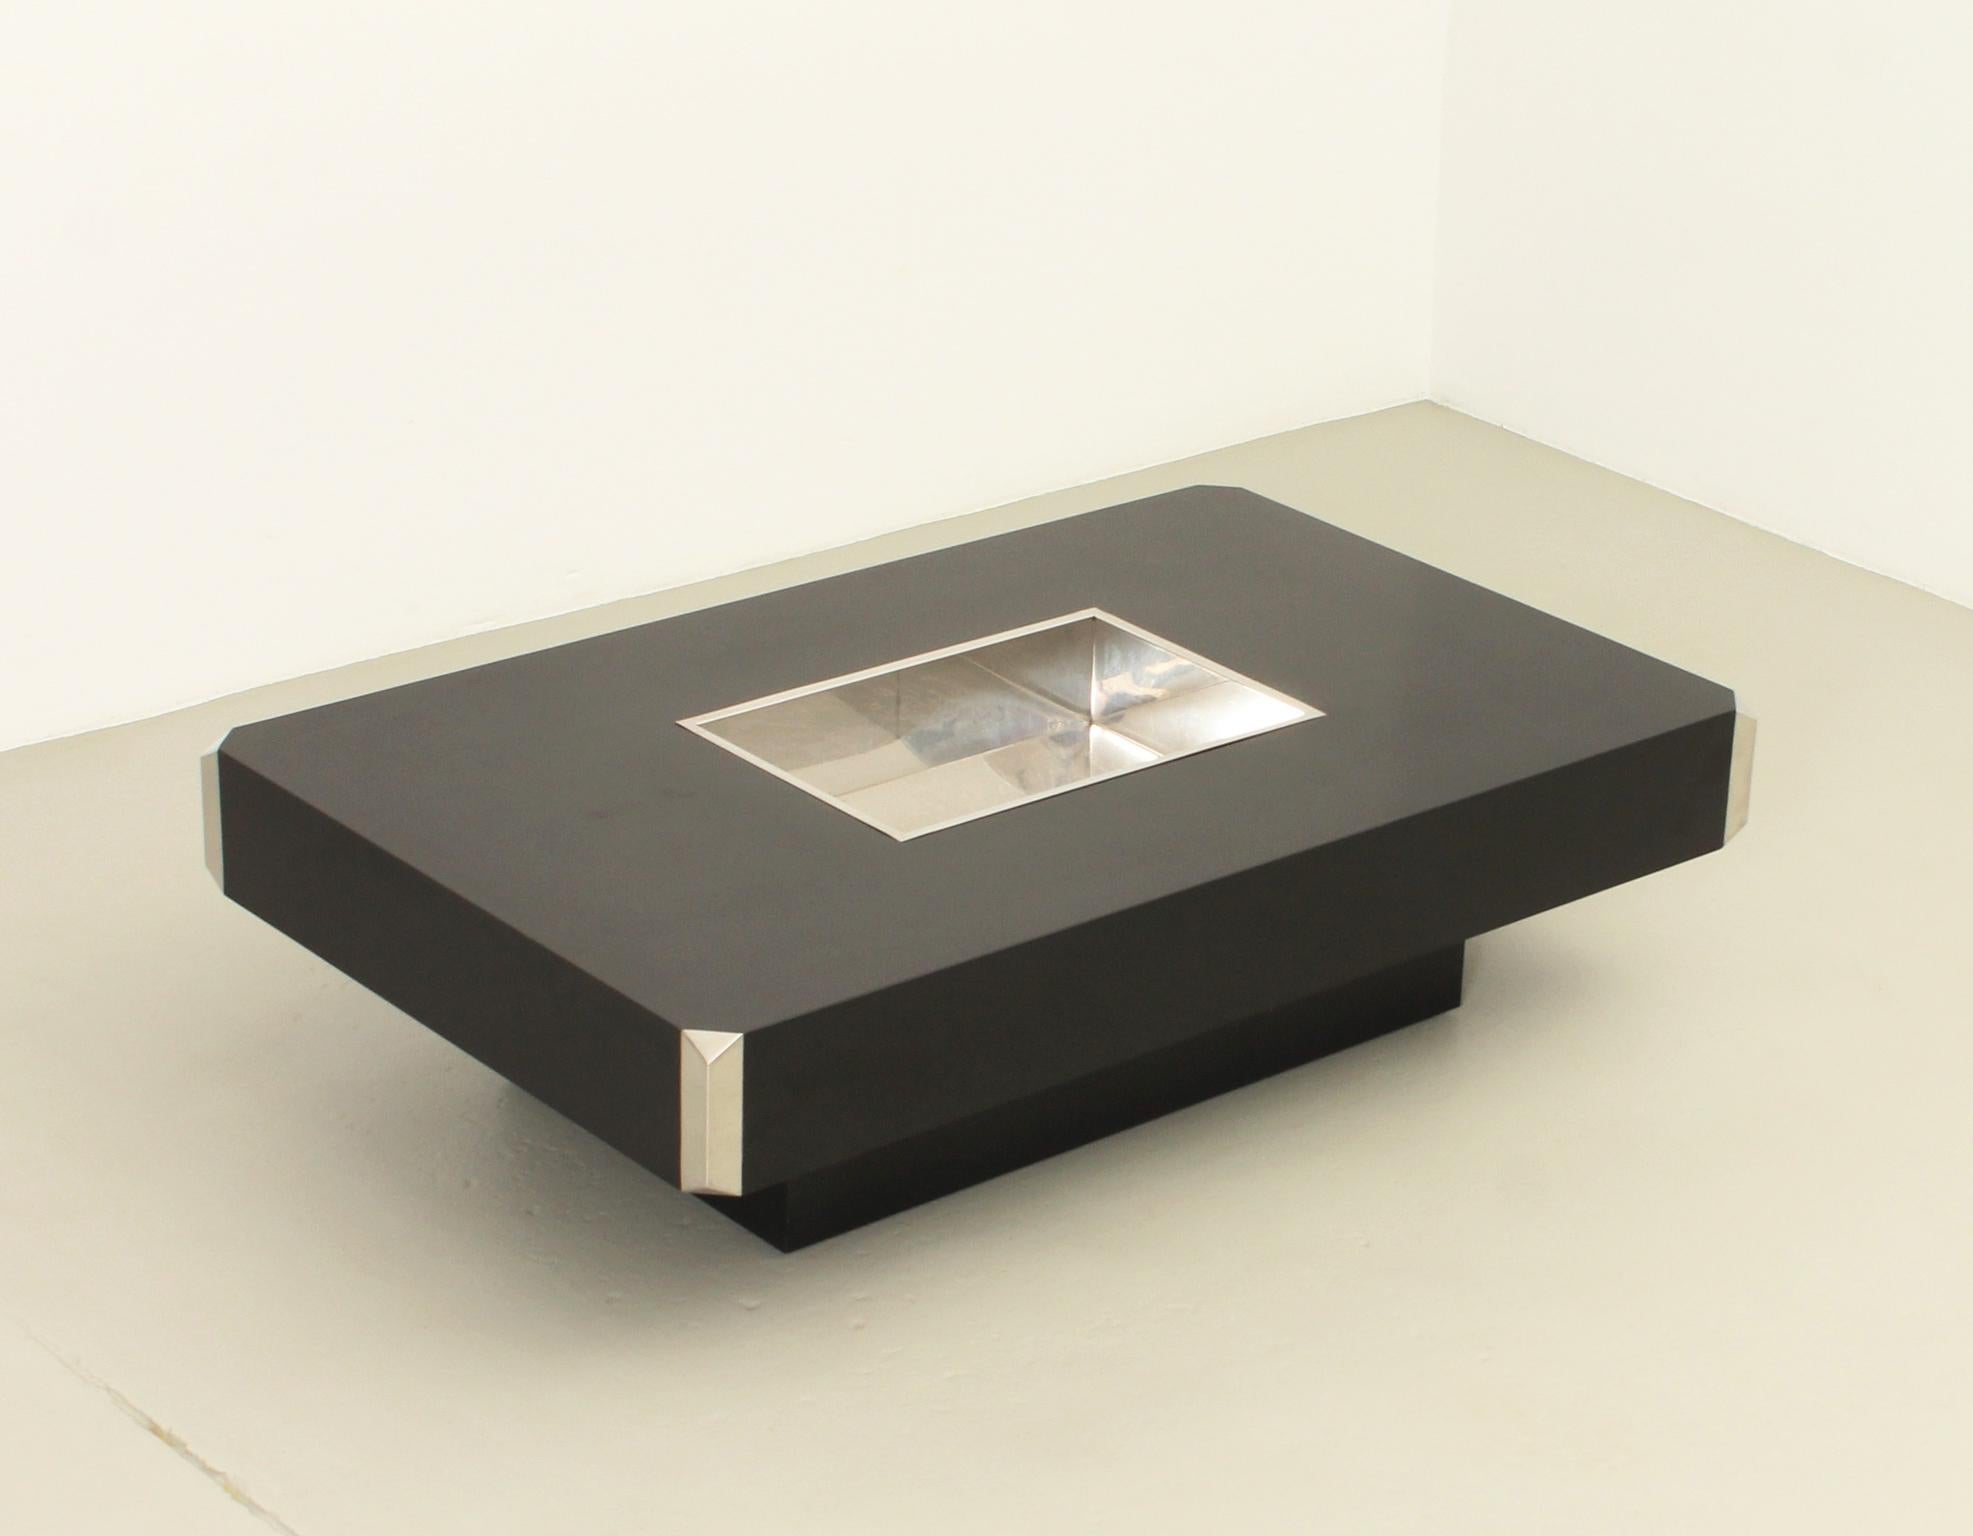 Alveo Couchtisch, entworfen 1972 von Willy Rizzo für Mario Sabot, Italien. Schwarzes Laminat mit Einlegeplatte und Ecken aus verchromtem Metall.